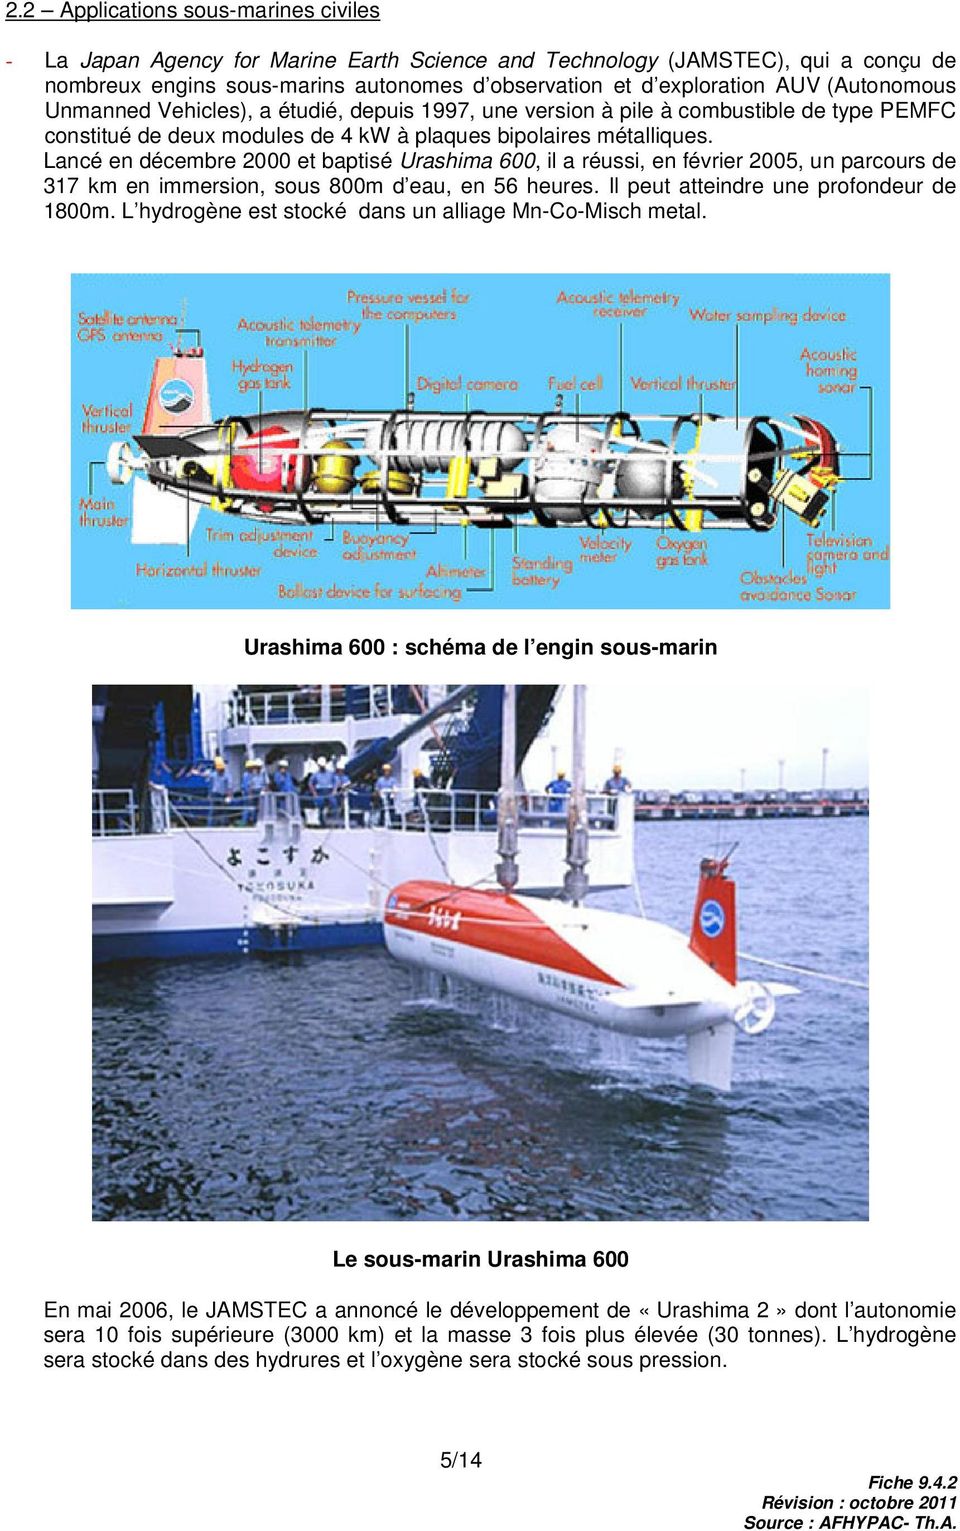 Lancé en décembre 2000 et baptisé Urashima 600, il a réussi, en février 2005, un parcours de 317 km en immersion, sous 800m d eau, en 56 heures. Il peut atteindre une profondeur de 1800m.